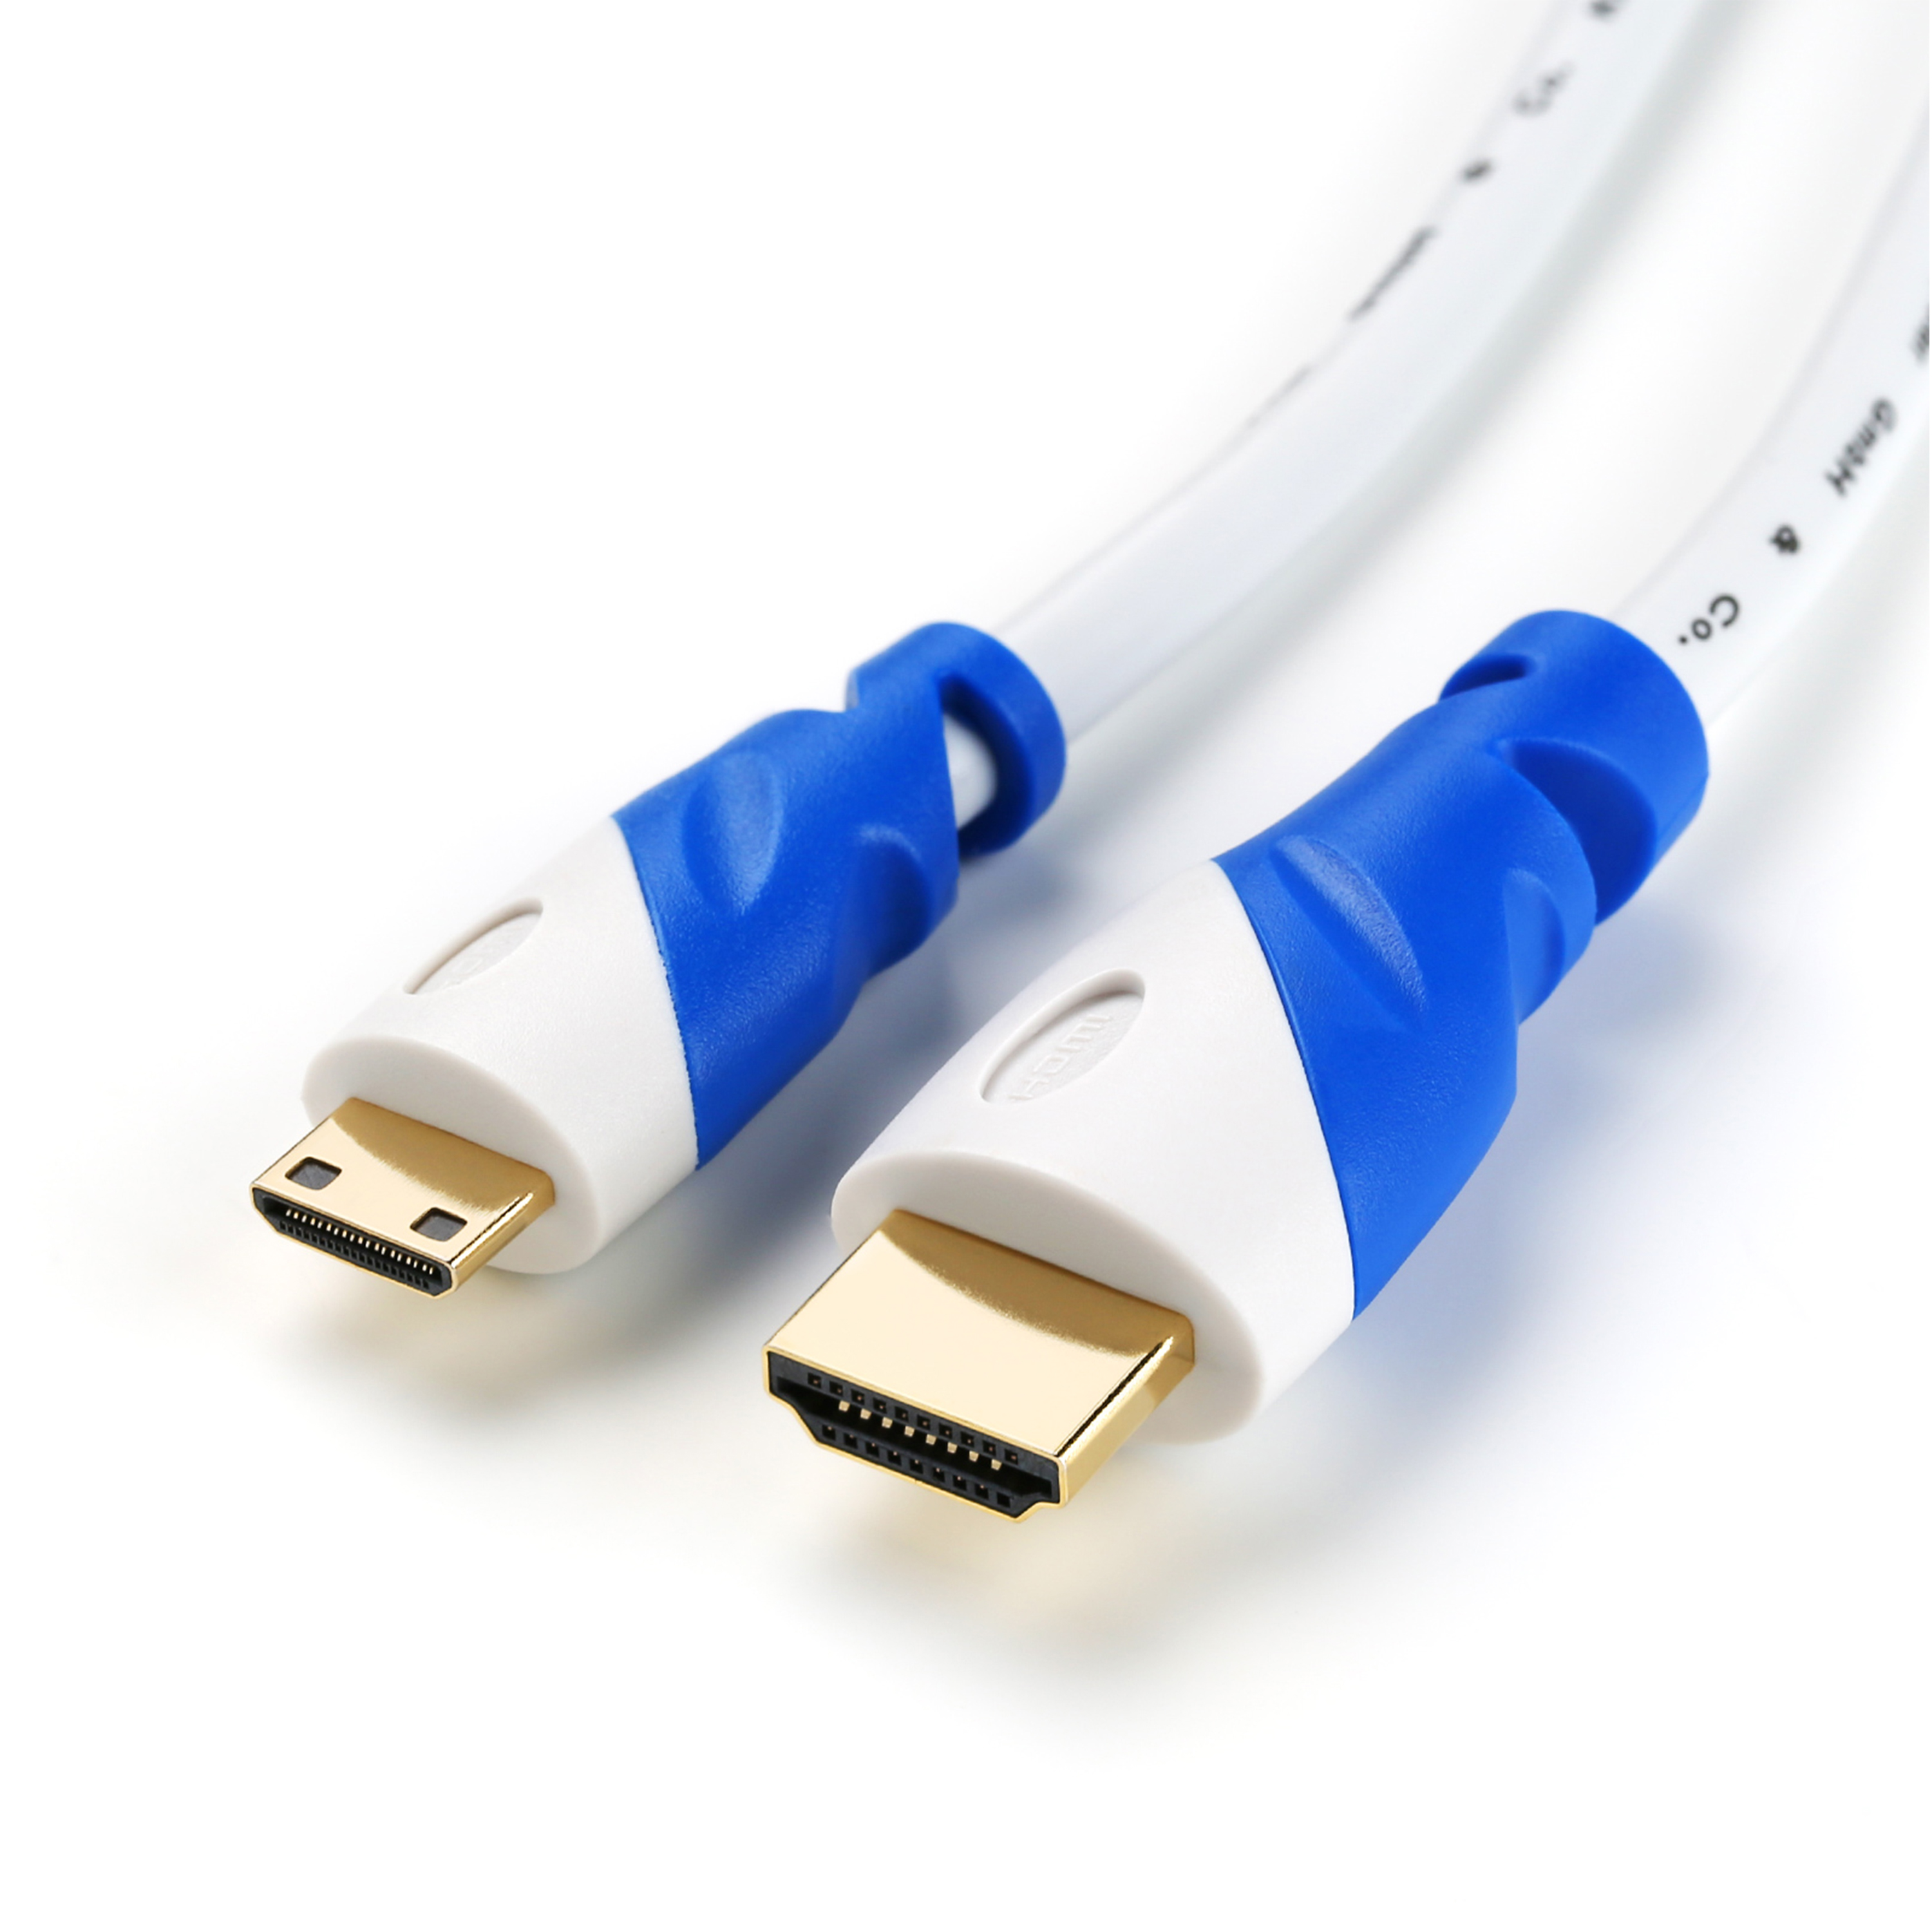 Kabel, CSL HDMI HDMI gewinkelt, weiß/blau 2m Kabel, 2.0